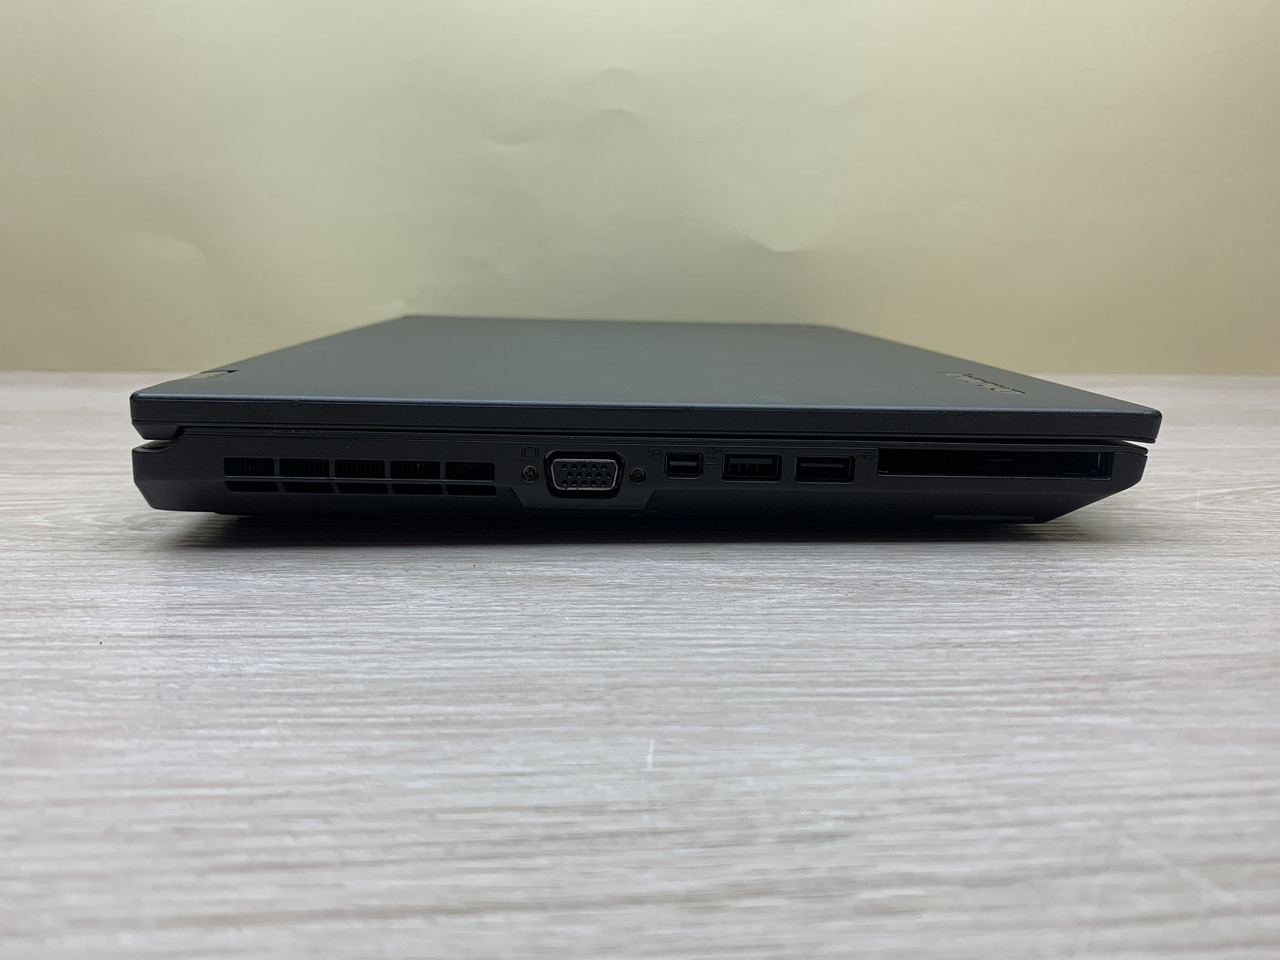 Б/в Ноутбук Lenovo Thinkpad L440 / Intel Core i5-4210M / 8 Гб / 120 Гб / Клас B